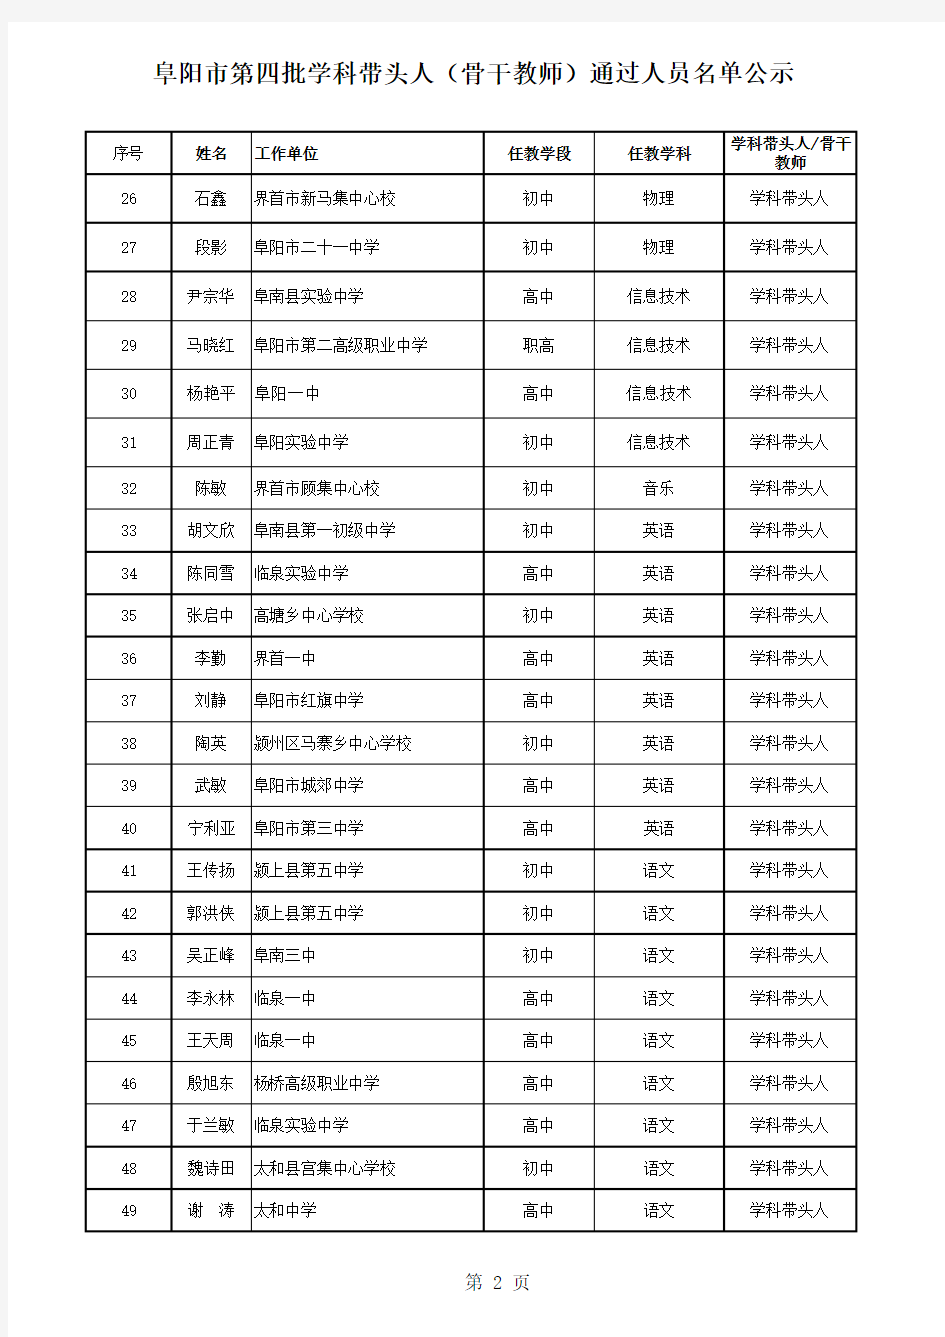 阜阳市第四批学科带头人(骨干教师)通过人员名单公示